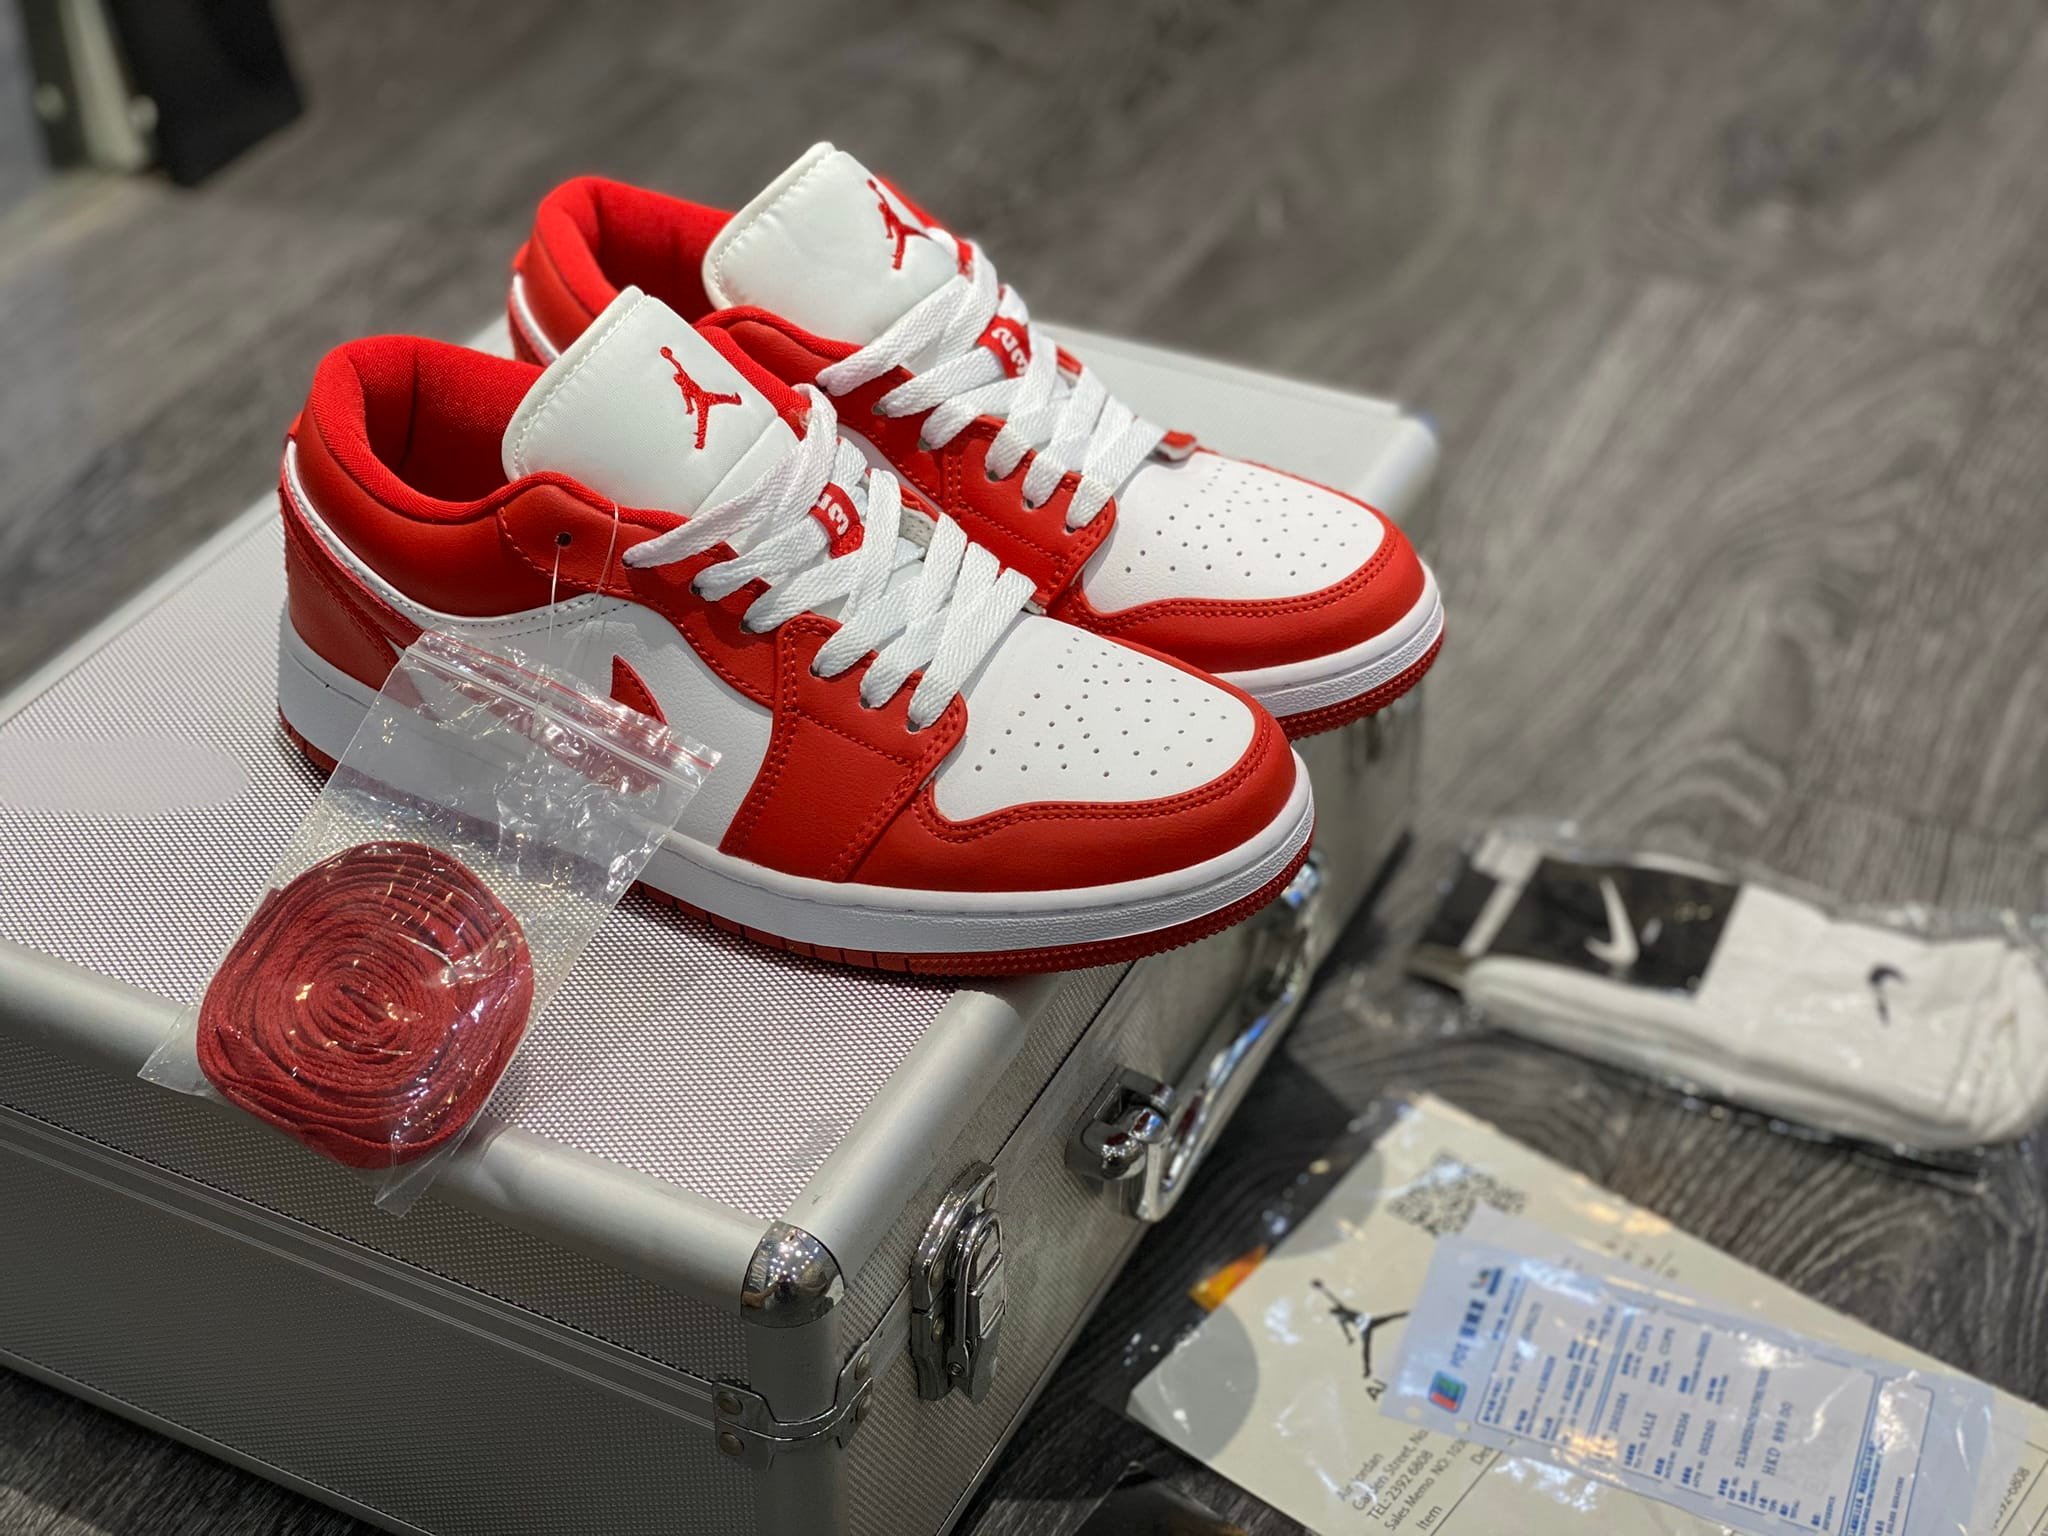 【Lincoln Sports】[ Full Box + Bill ] Giày Jordan Cổ Thấp Nam Nữ, Giày Sneaker JD1 Đỏ Trắng Cổ Thấp...